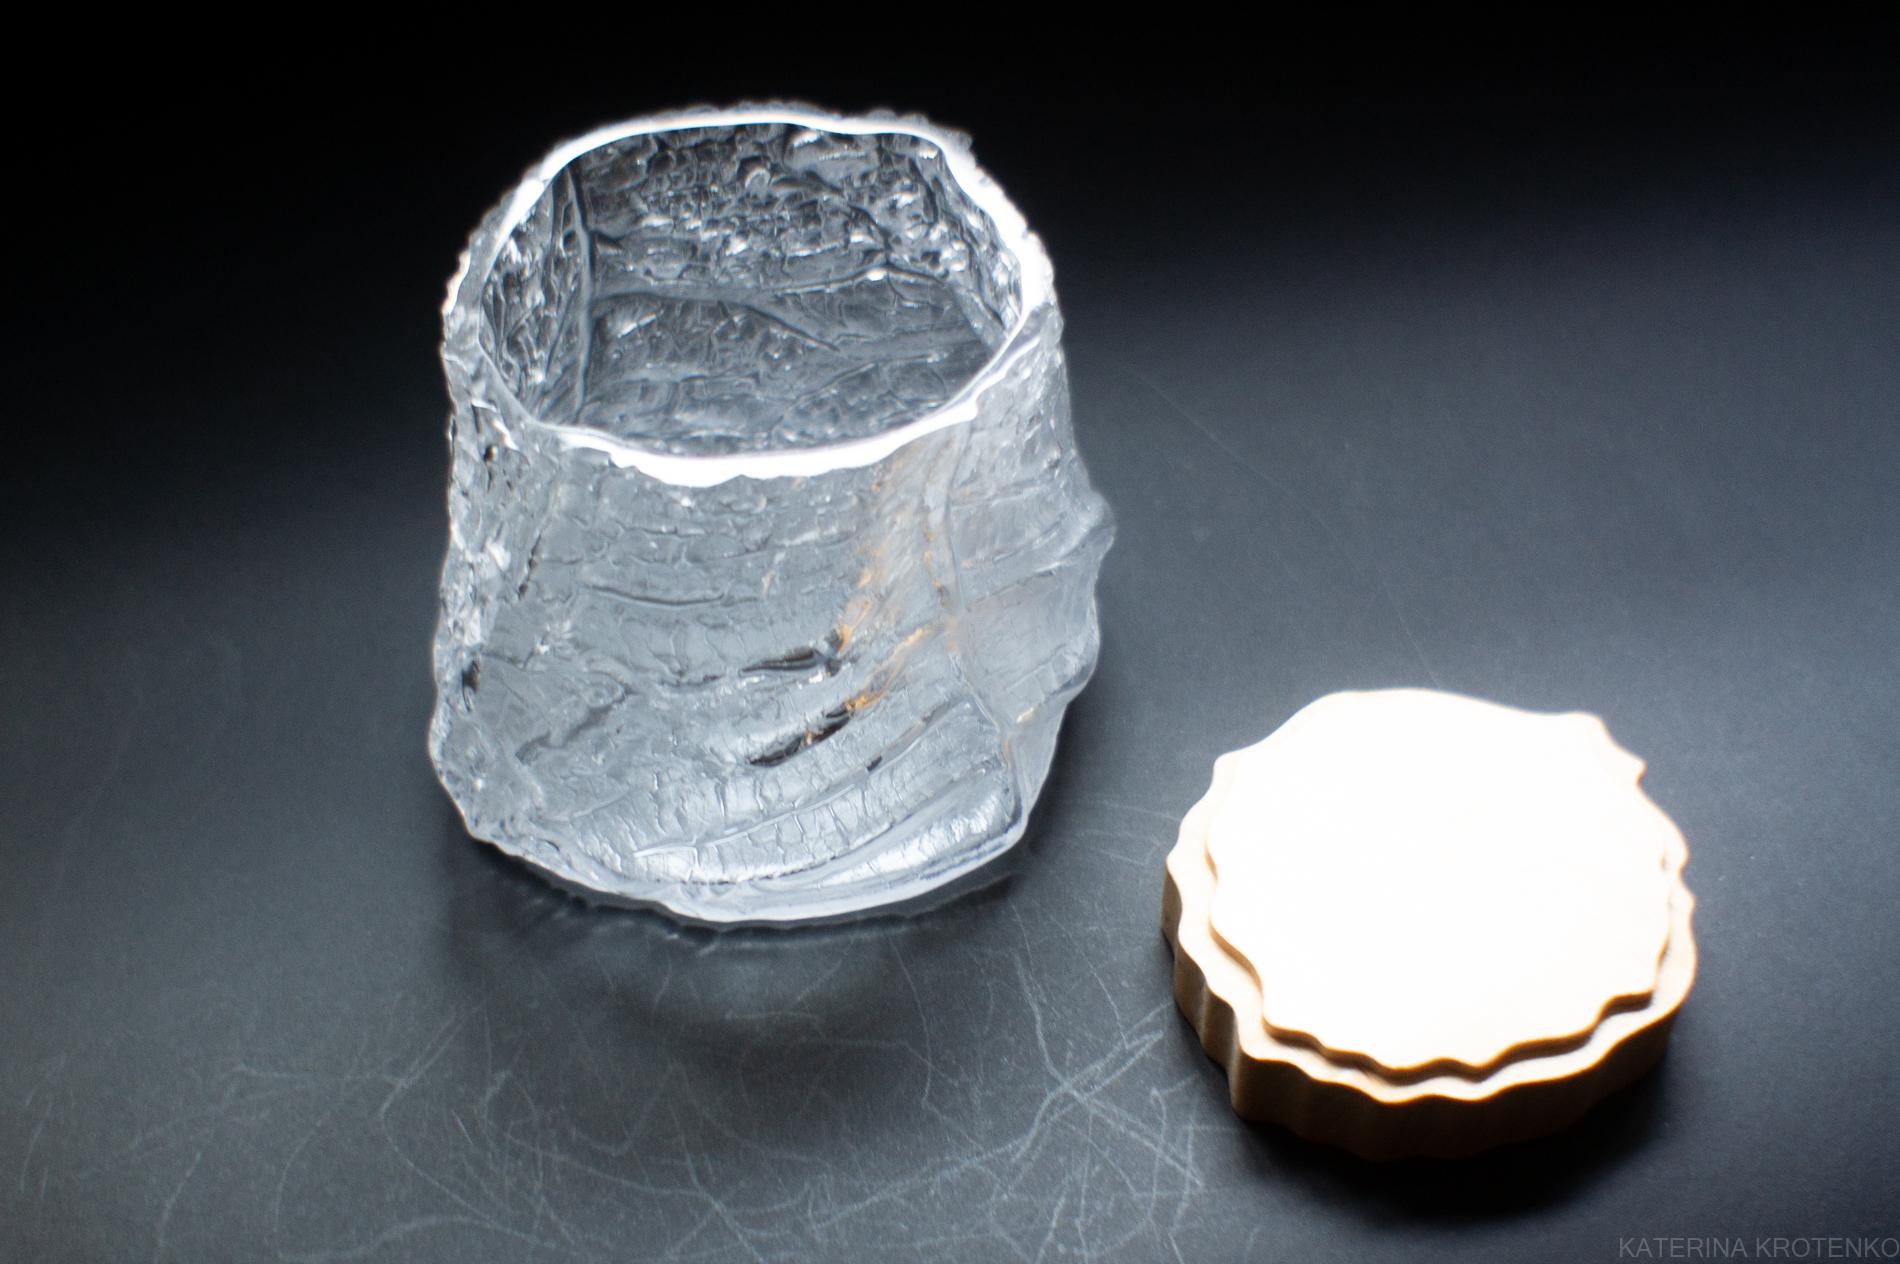 Glasschatzkammer, Band IX Nr. 10, dampfend transluzent

Drago ist eine skulpturale Glasware, die das Konzept einer Schatzkammer erforscht.  die Kraft eines Gefäßes, den Wert von persönlich wertvollen Bestandteilen oder materiellen Einheiten von